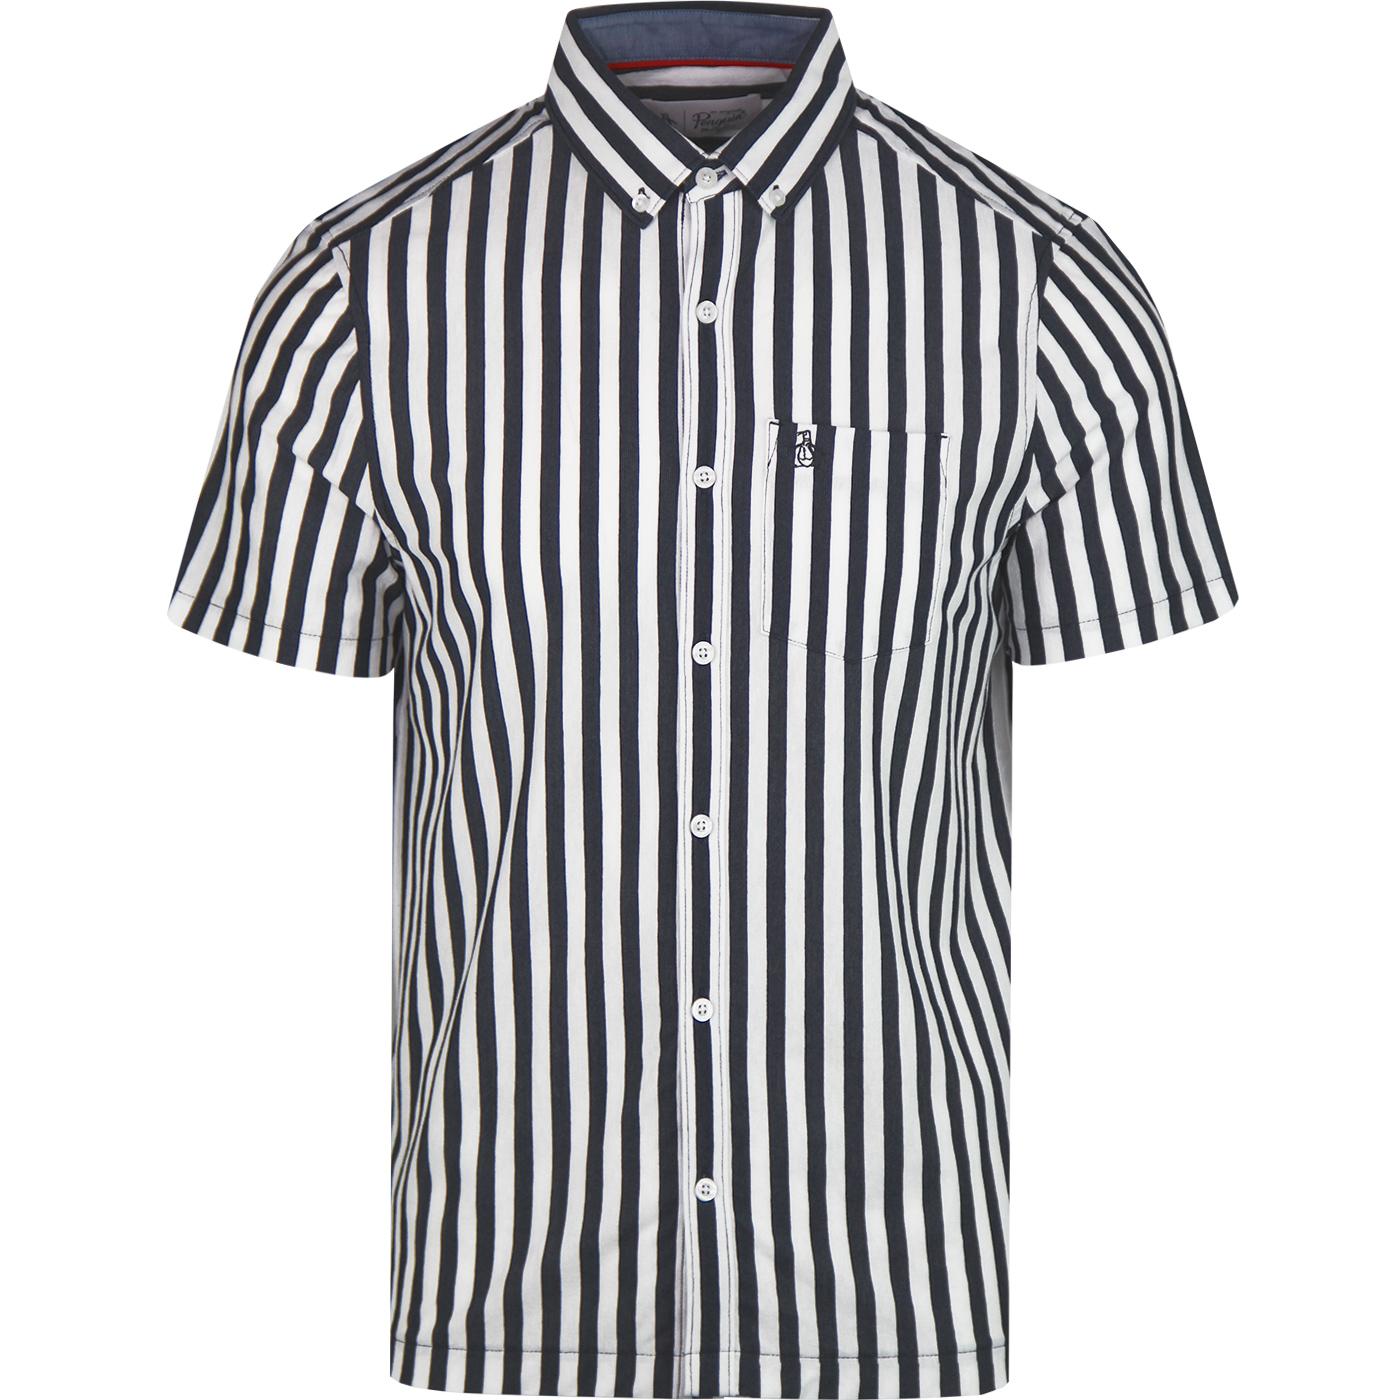 ORIGINAL PENGUIN Men's Mod Stripe Ivy League Shirt